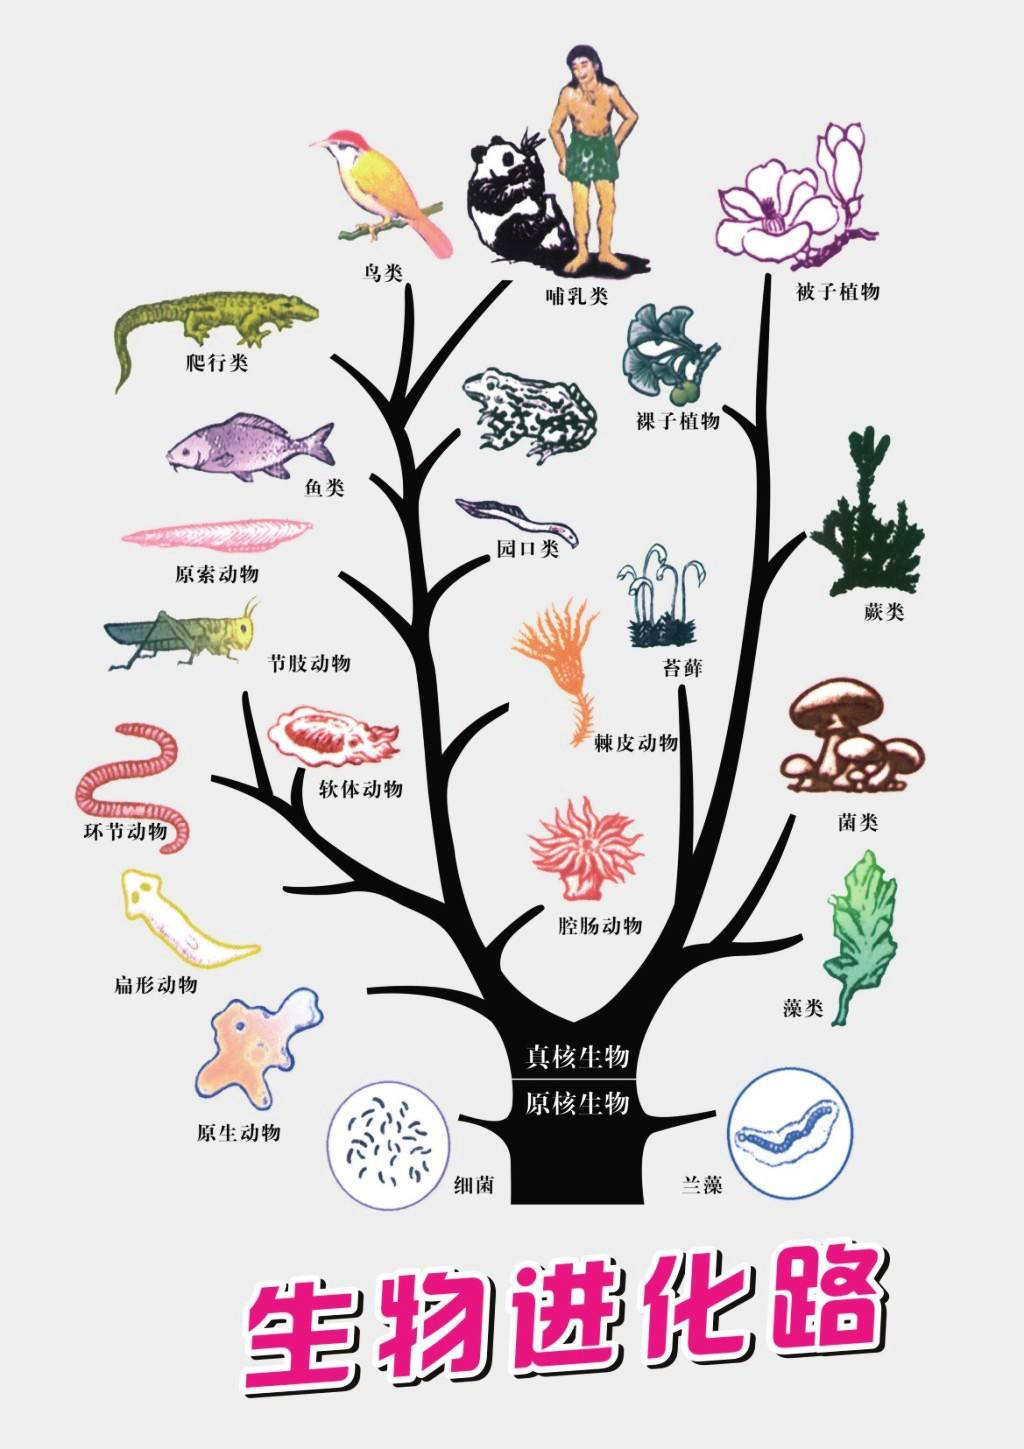 生物进化树示意图(图片来源于网络